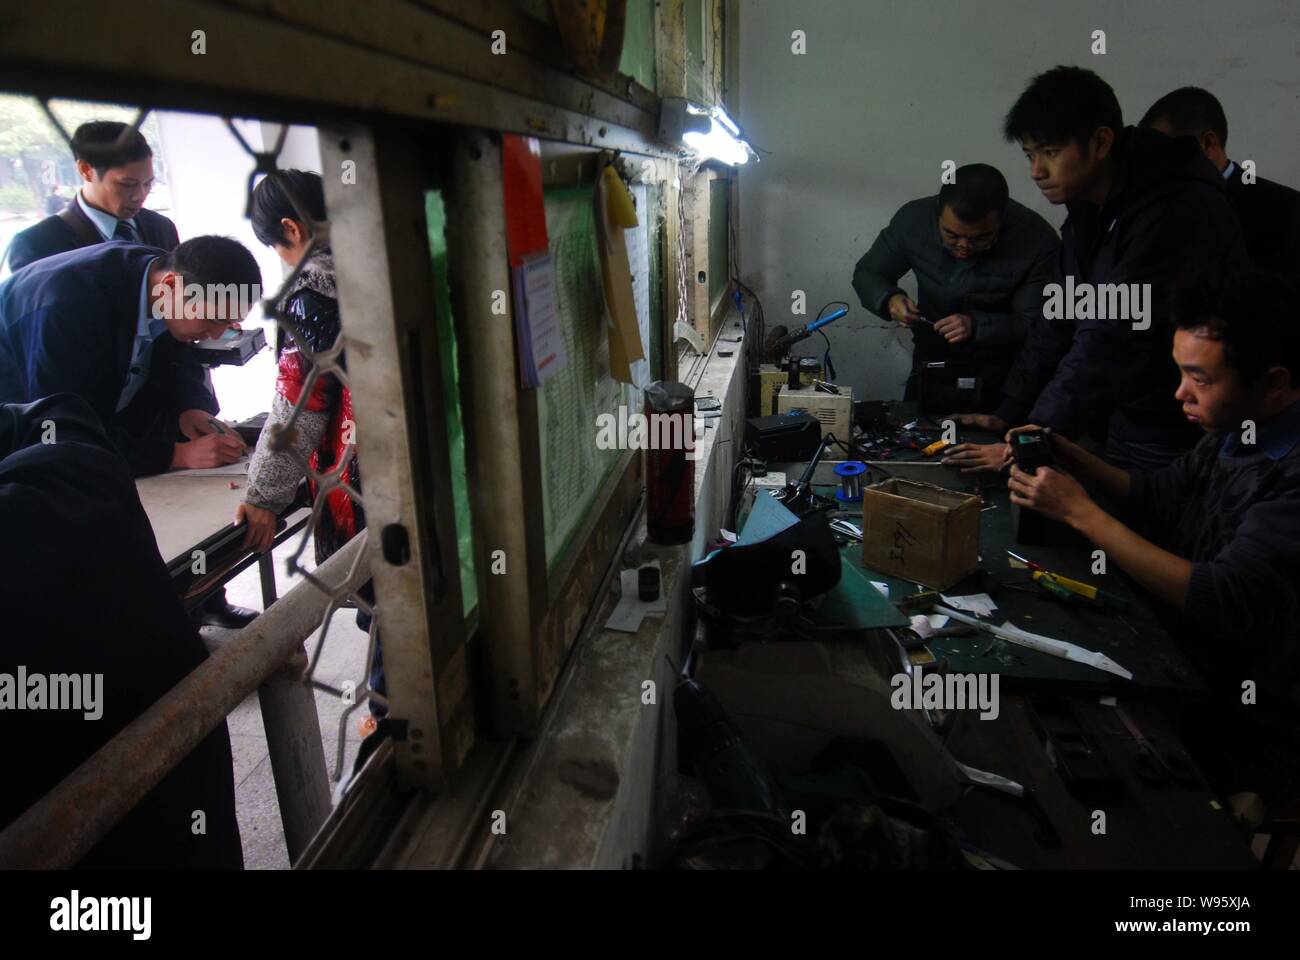 Réparation des travailleurs à un département maintenance taximètres à Guangzhou, province de Guangdong, Chine du Sud, 29 février 2012. Guangzhous les usines sont famo Banque D'Images